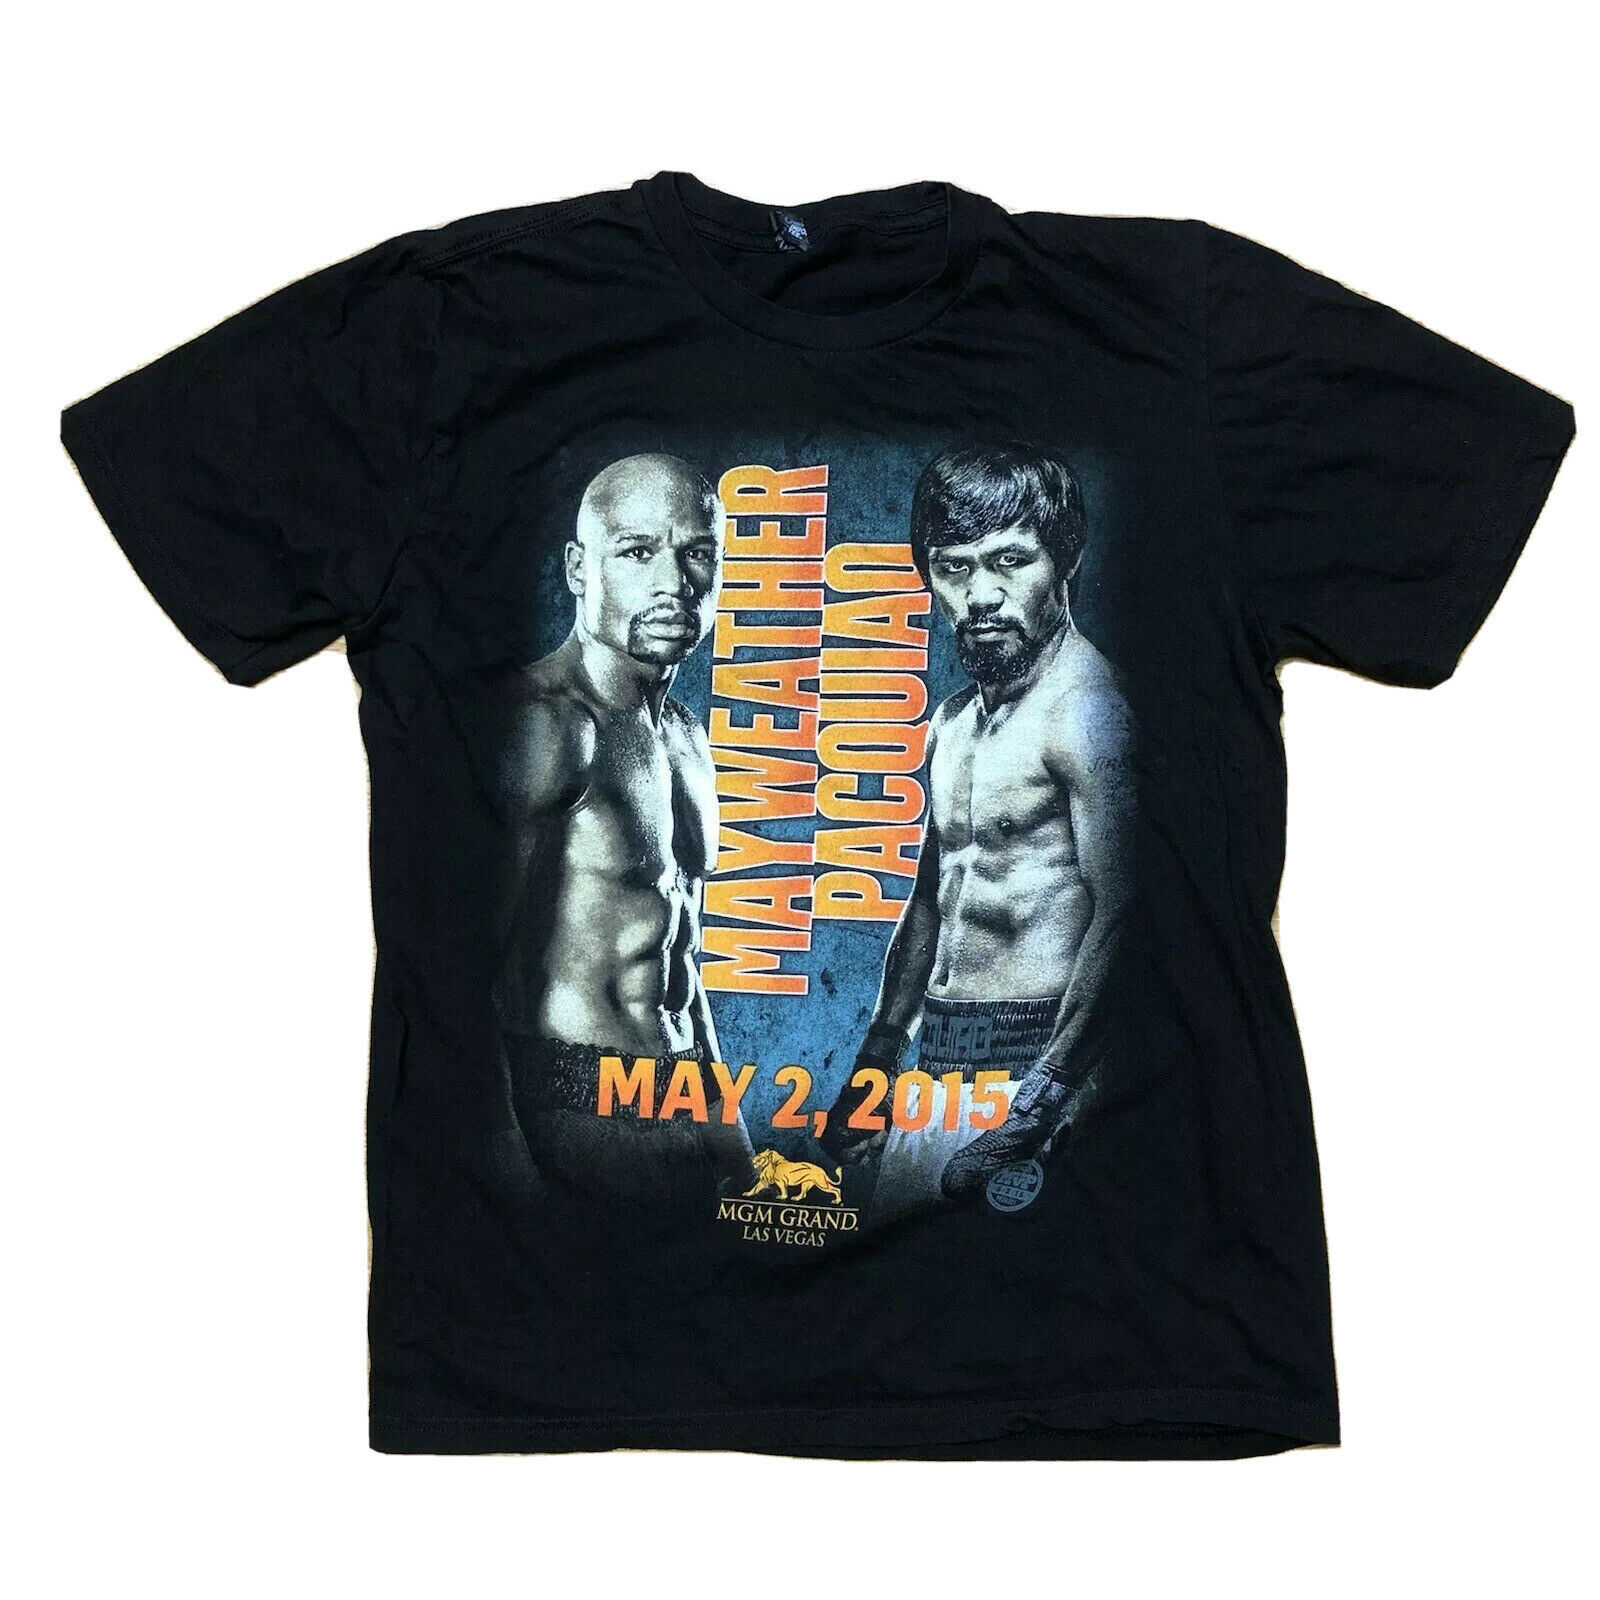 Mayweather Vs. Pacquiao T-Shirt Size Medium? May 2, 2015 MGM Grand Las Vegas